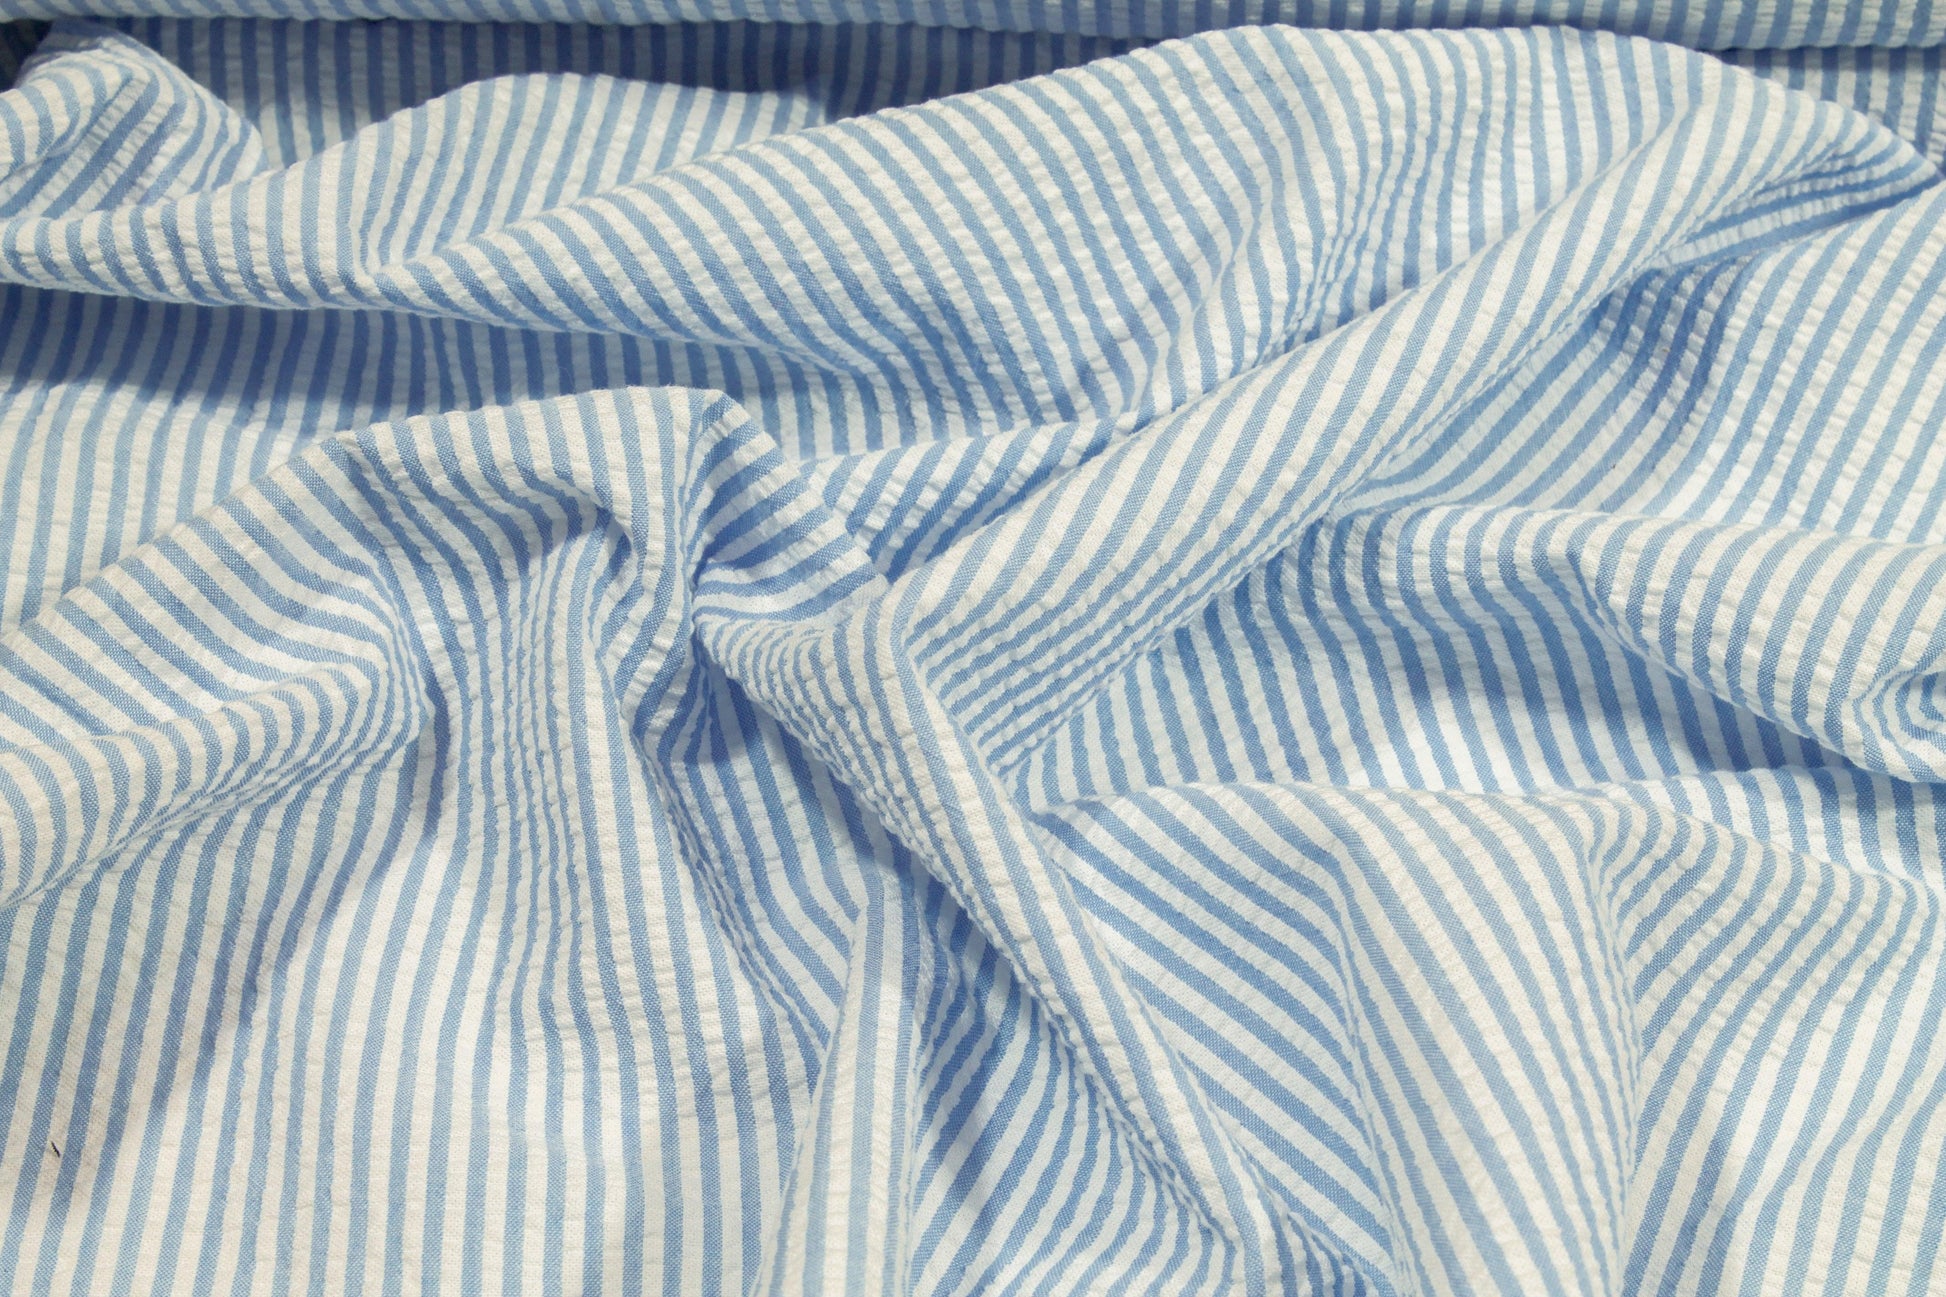 Wylie Dark Blue and White Candy Striped Polyester and Cotton Seersucker -  Seersucker - Cotton - Fashion Fabrics